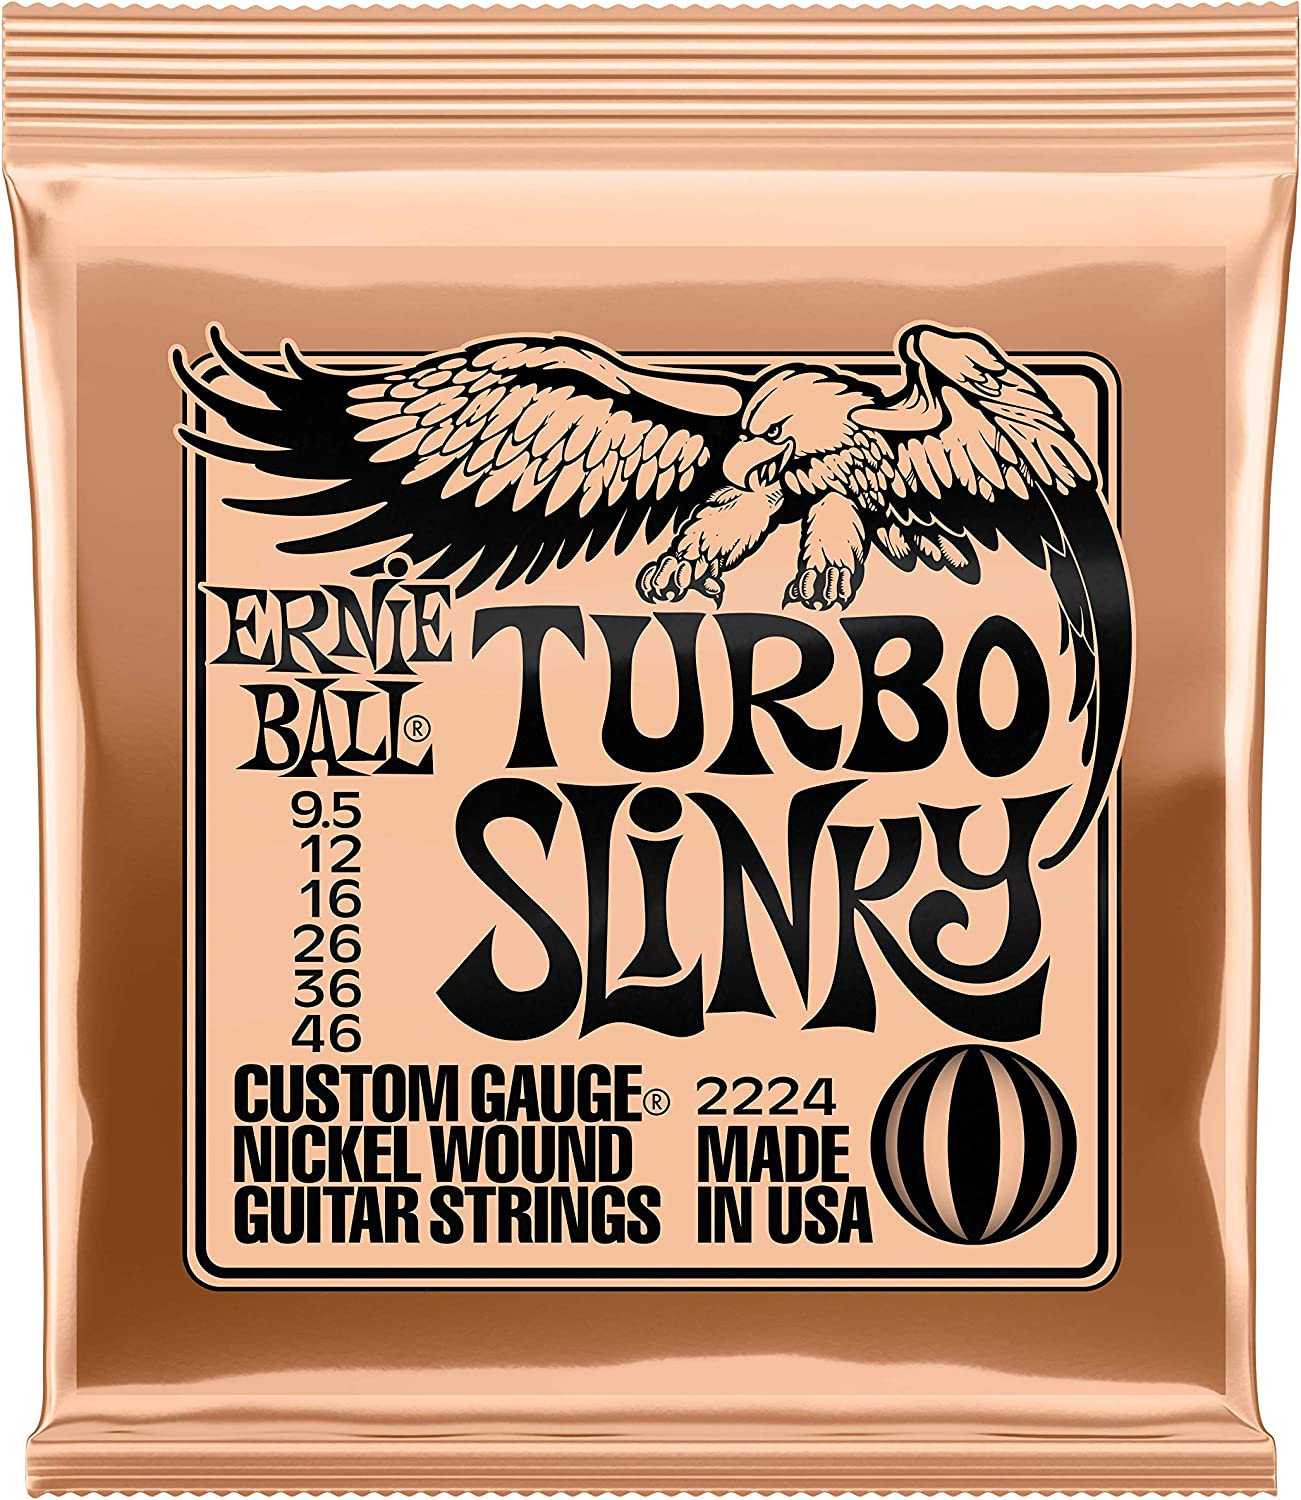 Ernie Ball Slinky Series Nickel Wound Electric Guitar Strings